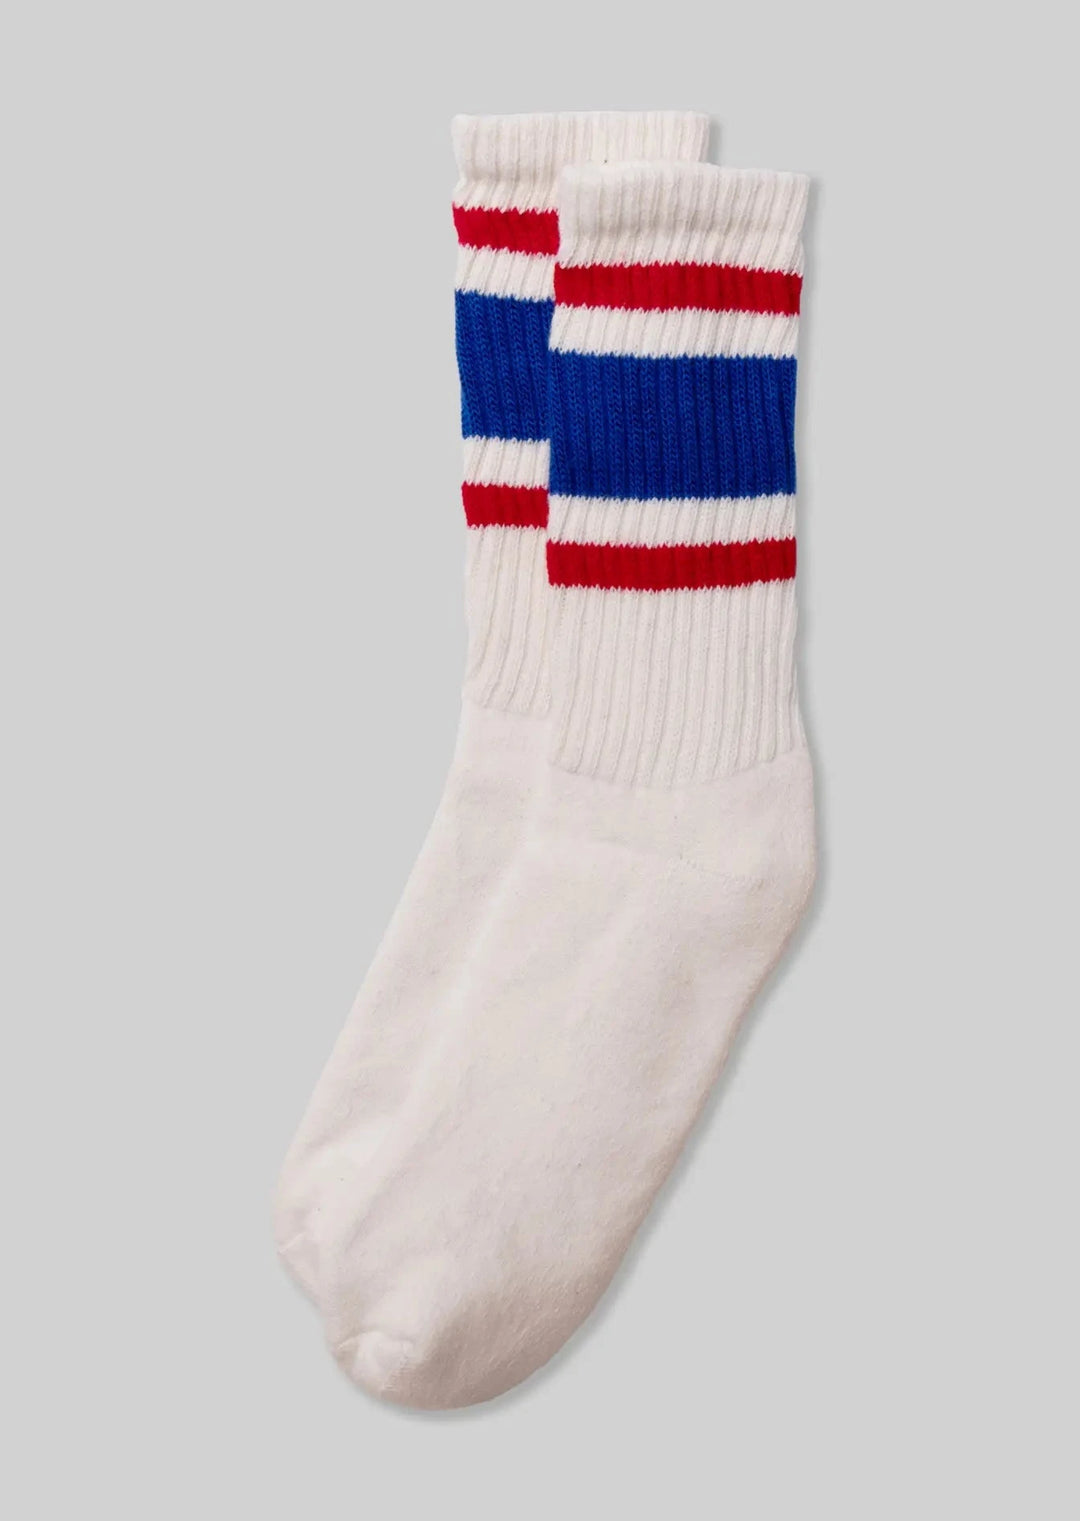 Retro Stripe Socks - Royal / Red